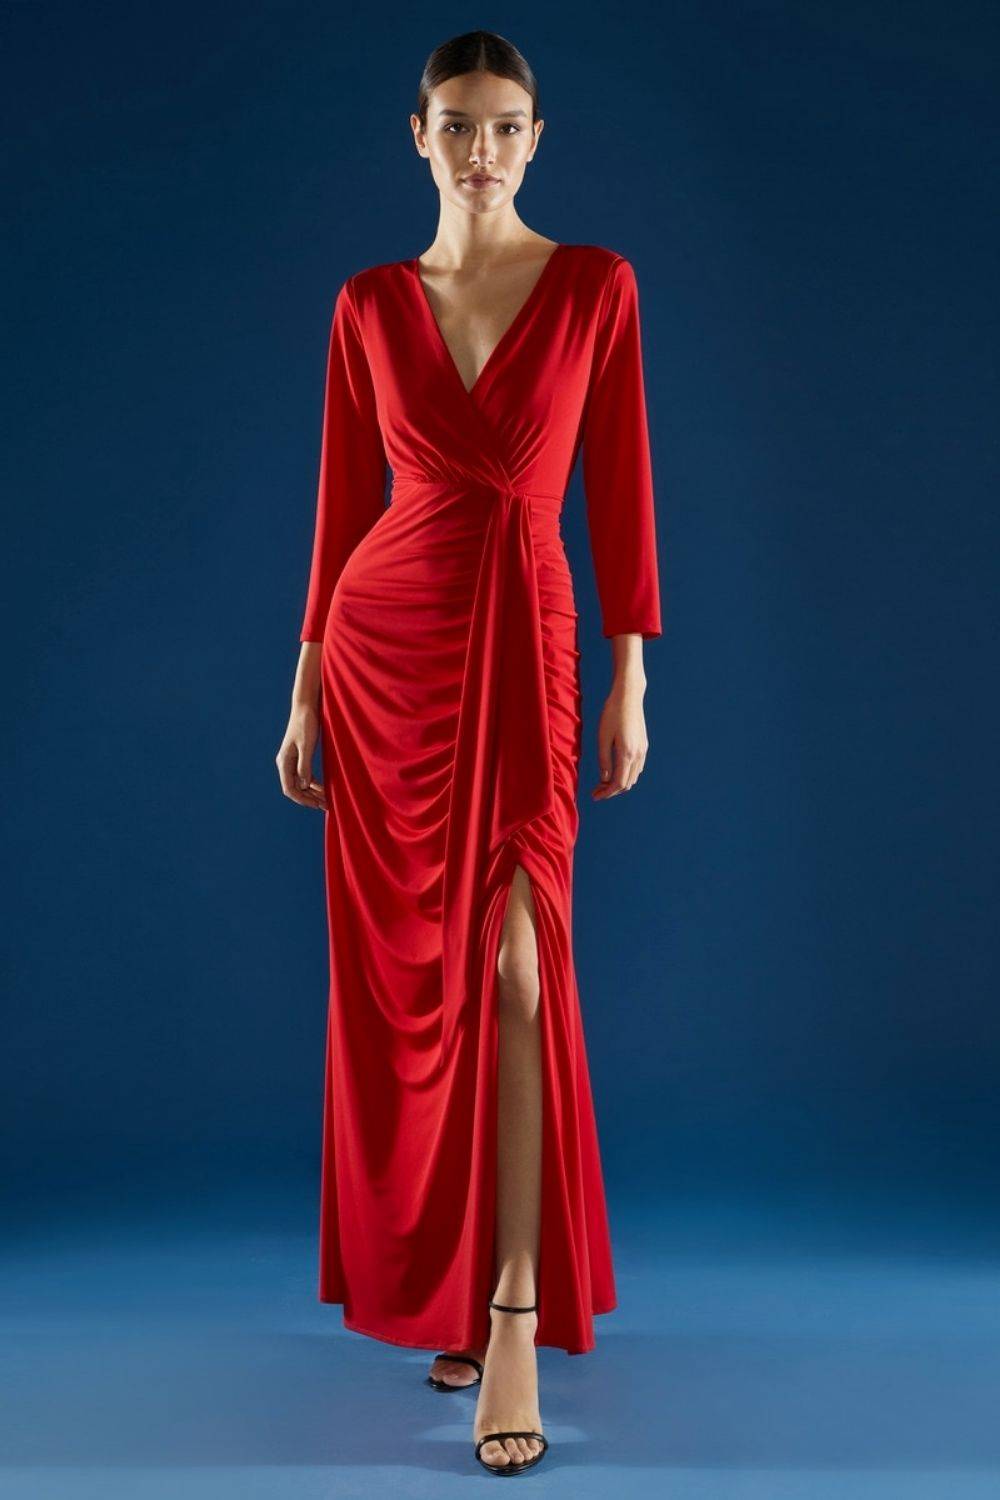 Vestido rojo drapeado 